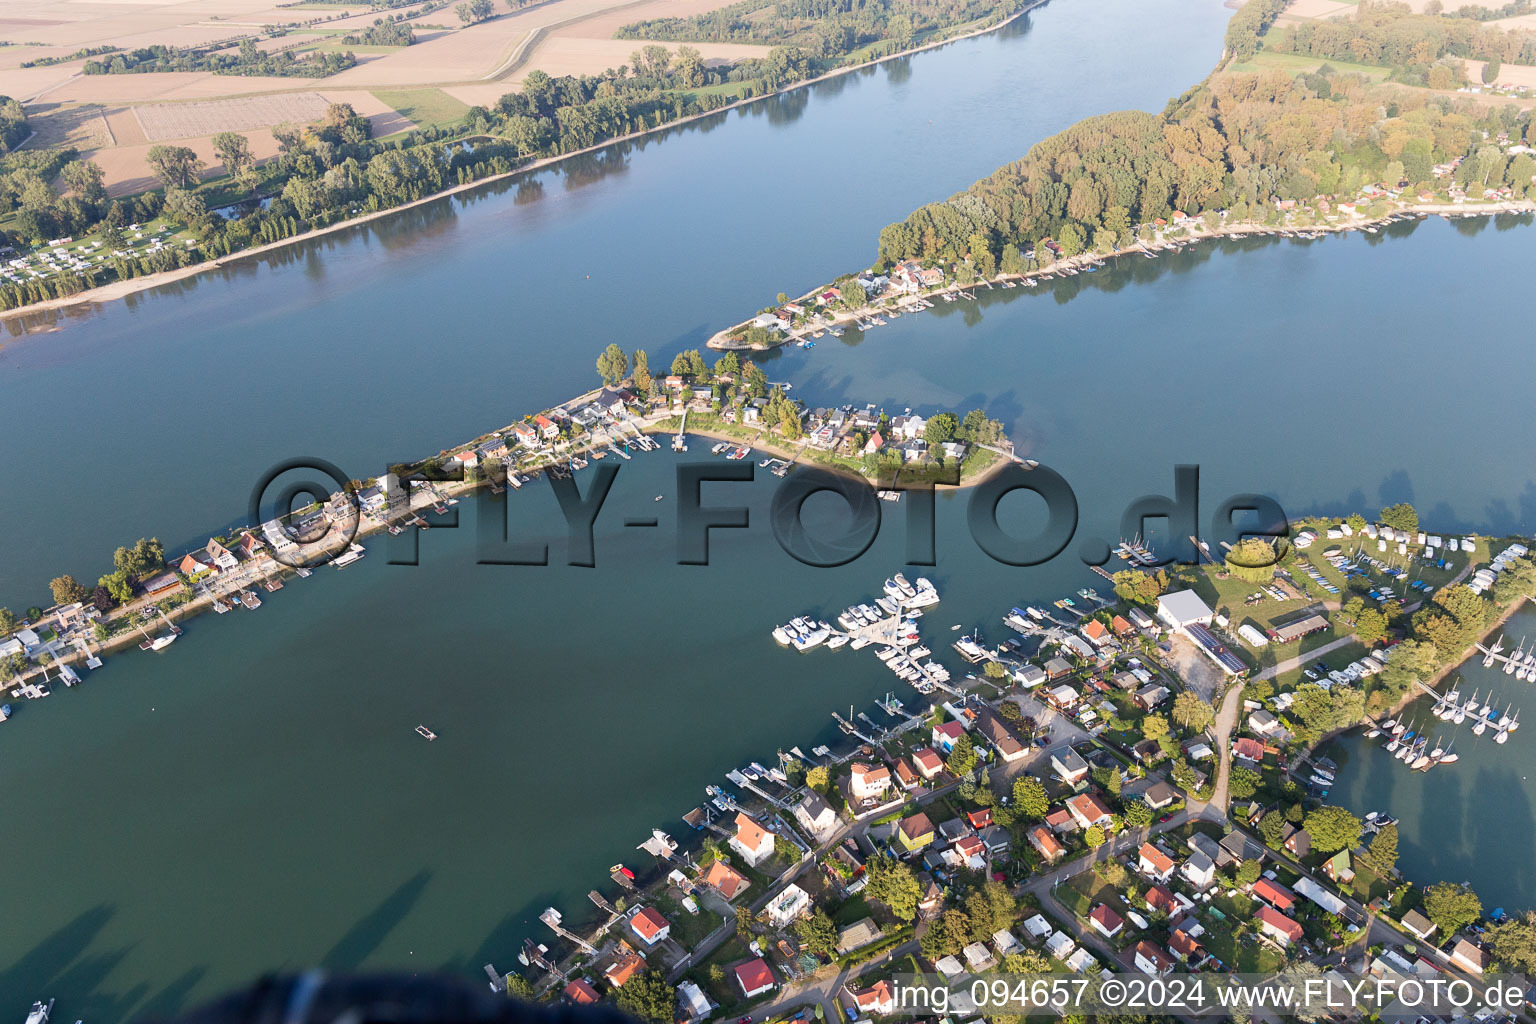 Luftbild von Wochenendhausgebiet und Uferbereiche Eicher See am Rhein im Ortsteil Eicher See in Eich im Bundesland Rheinland-Pfalz, Deutschland